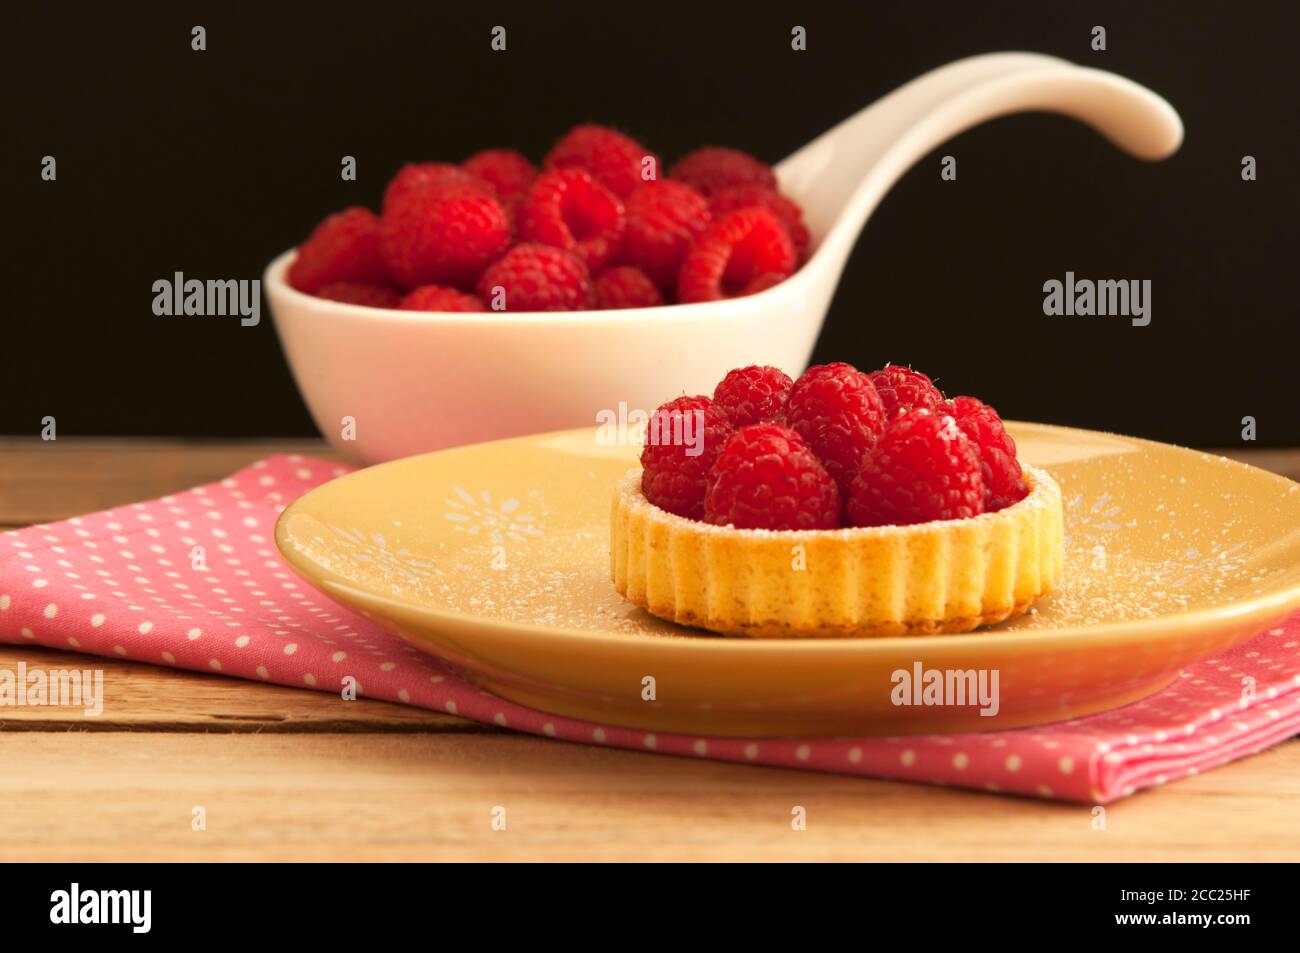 Cucchiaio di lamponi con tartlet e tovagliolo sulla tavola di legno, close up Foto Stock